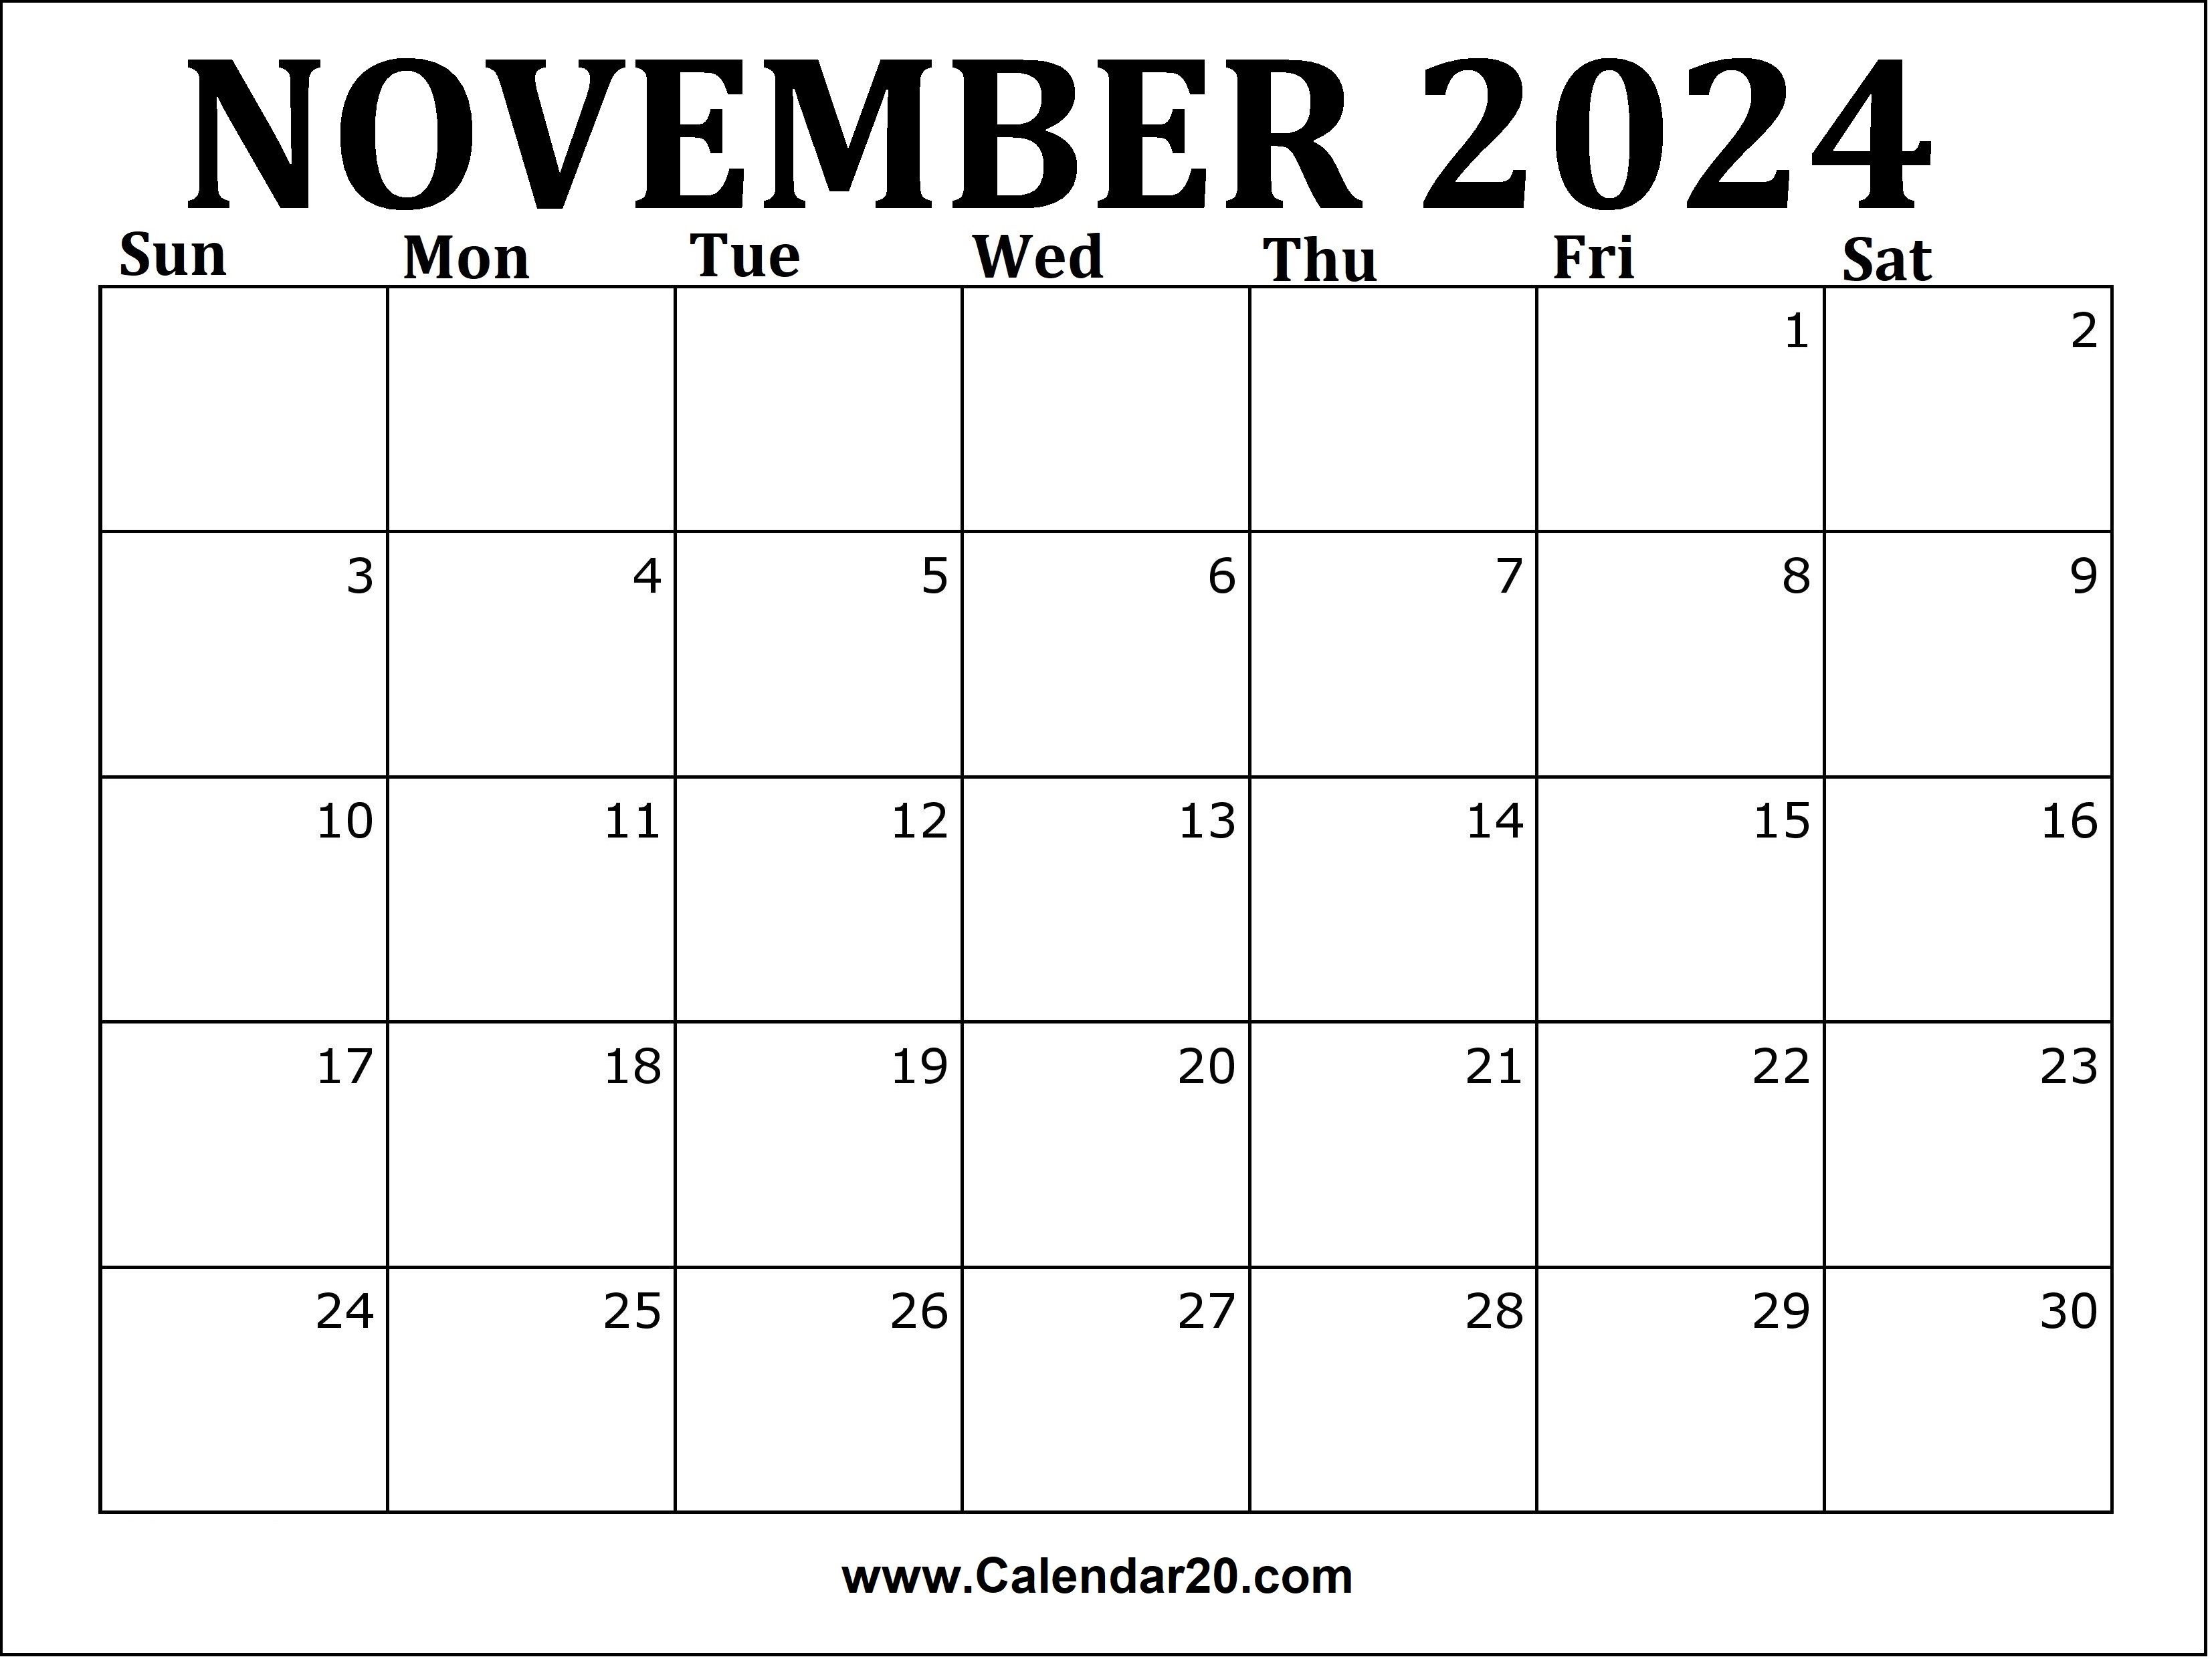 november-2024-printable-calendar-calendar20